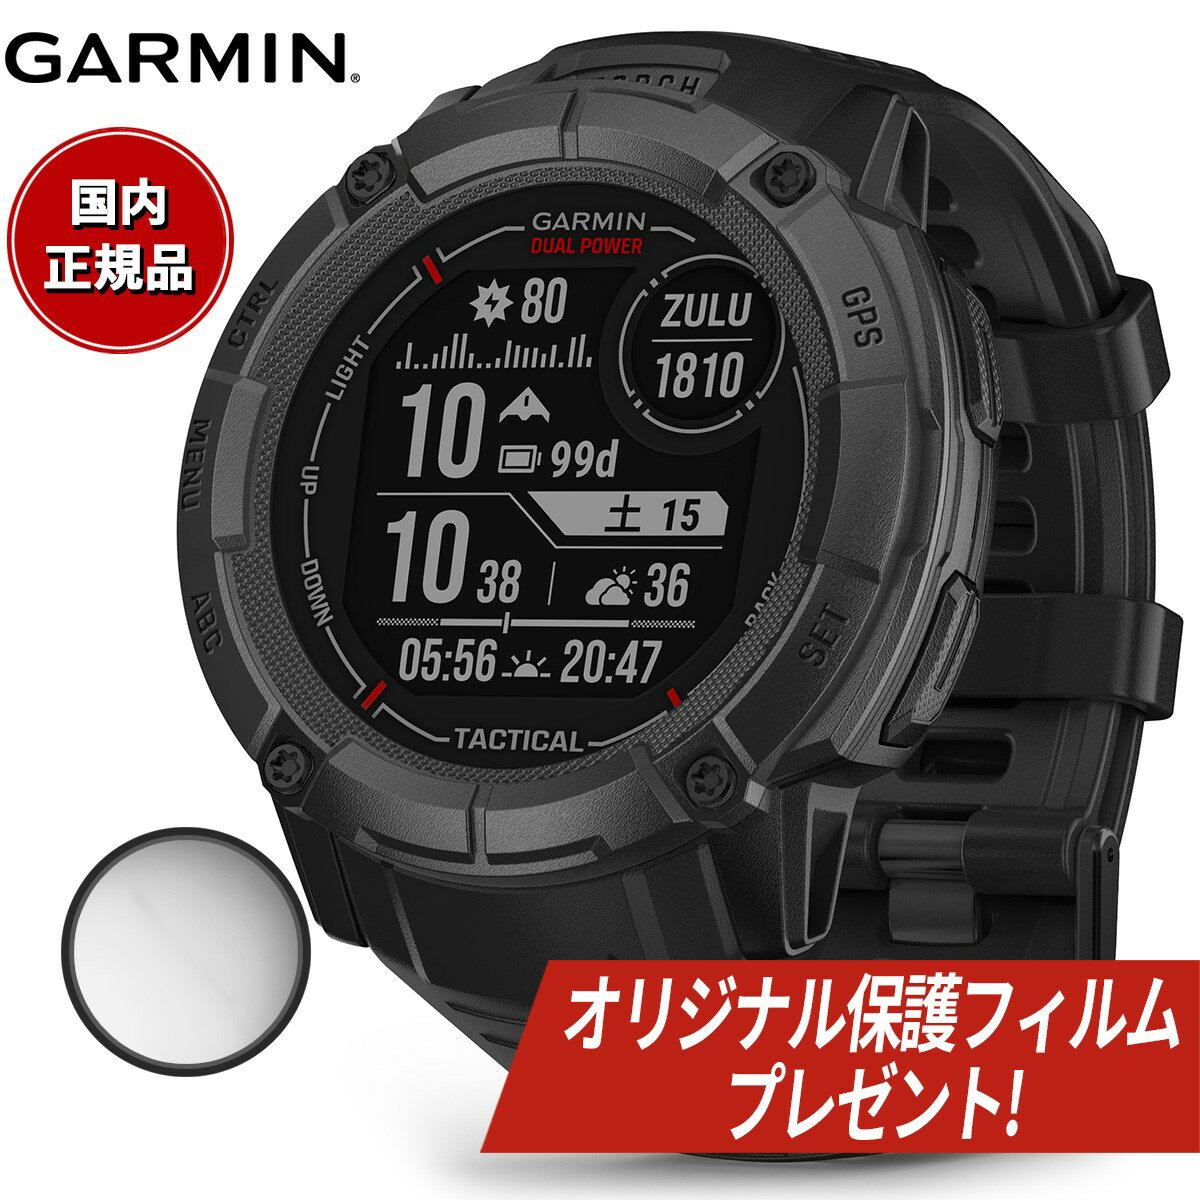 ガーミン GARMIN Instinct 2X Dual Power Tactical Edition インスティンクト2X デュアルパワー タクティカル 010-02805-72 GPS スマートウォッチ 腕時計